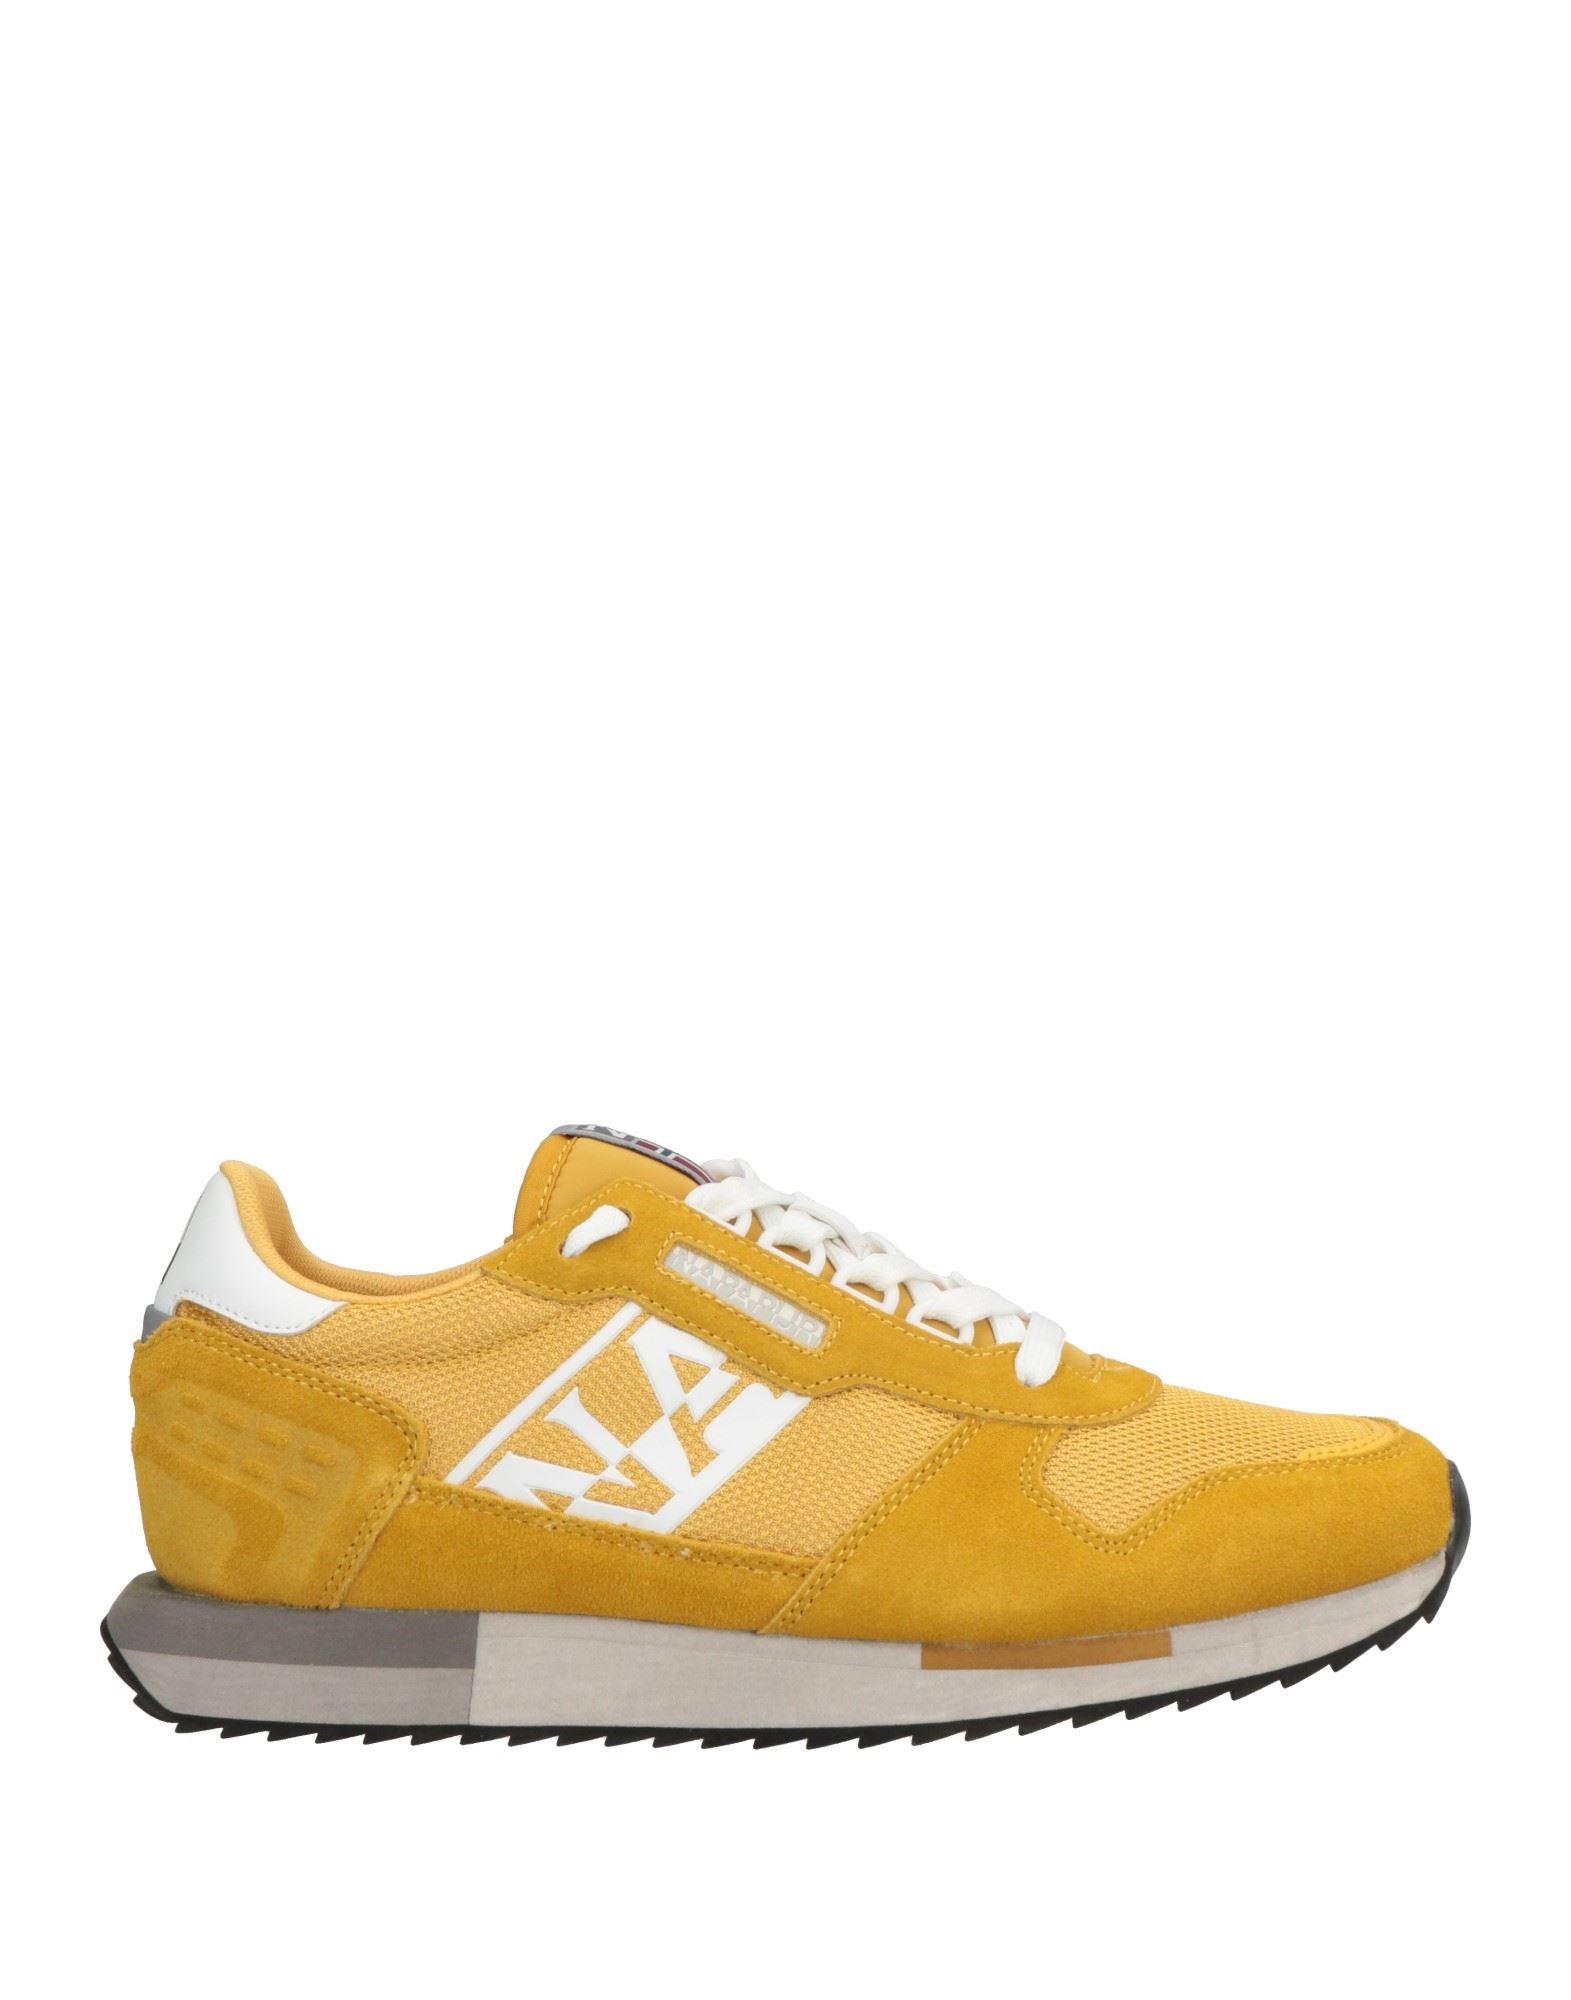 Napapijri Sneakers in Yellow for Men | Lyst